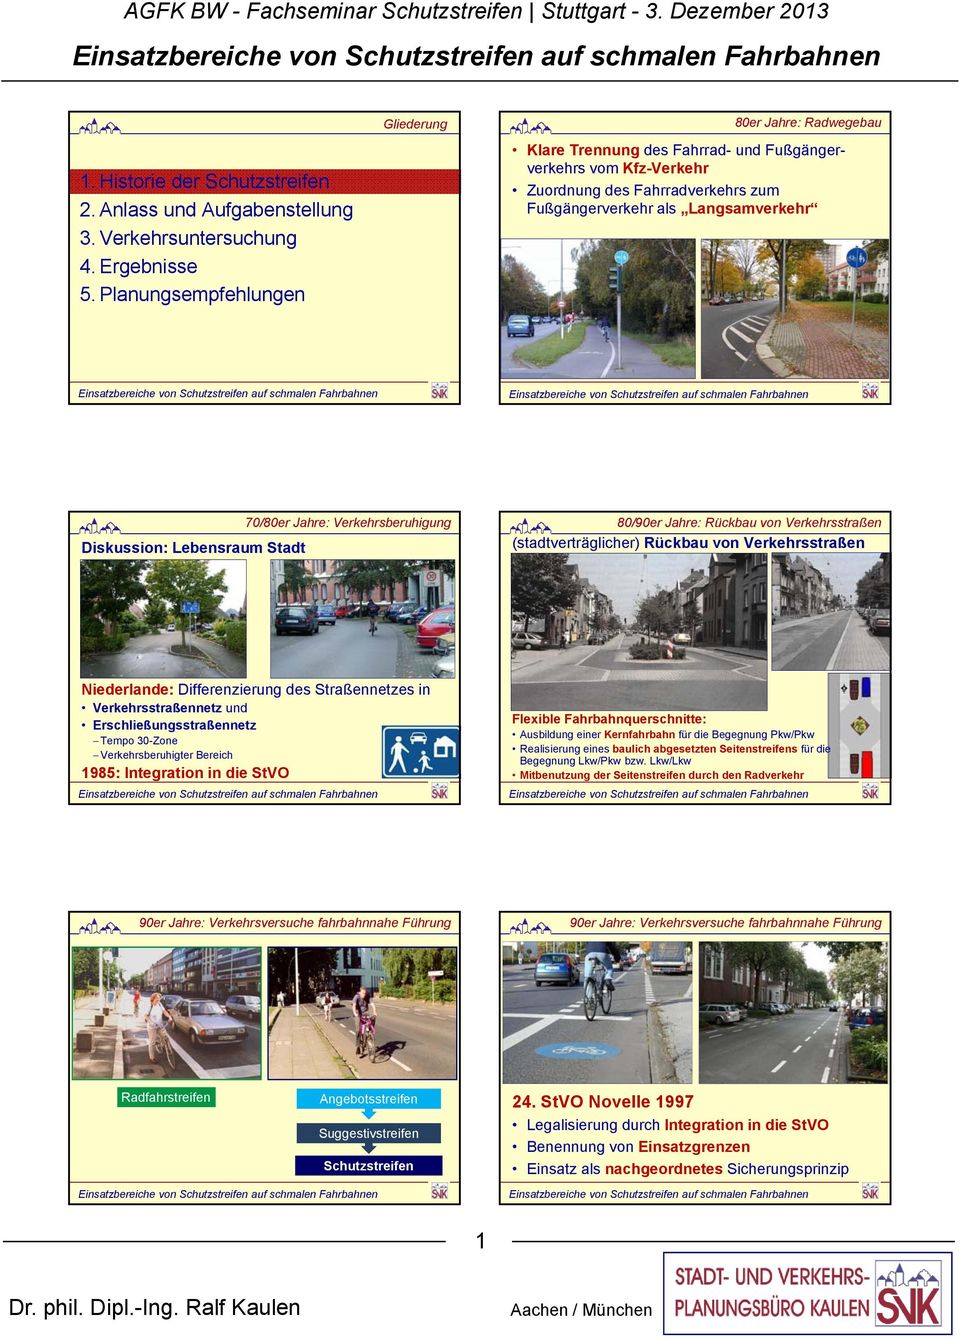 Jahre: Verkehrsberuhigung 80/90er Jahre: Rückbau von Verkehrsstraßen (stadtverträglicher) Rückbau von Verkehrsstraßen Niederlande: Differenzierung des Straßennetzes in Verkehrsstraßennetz und